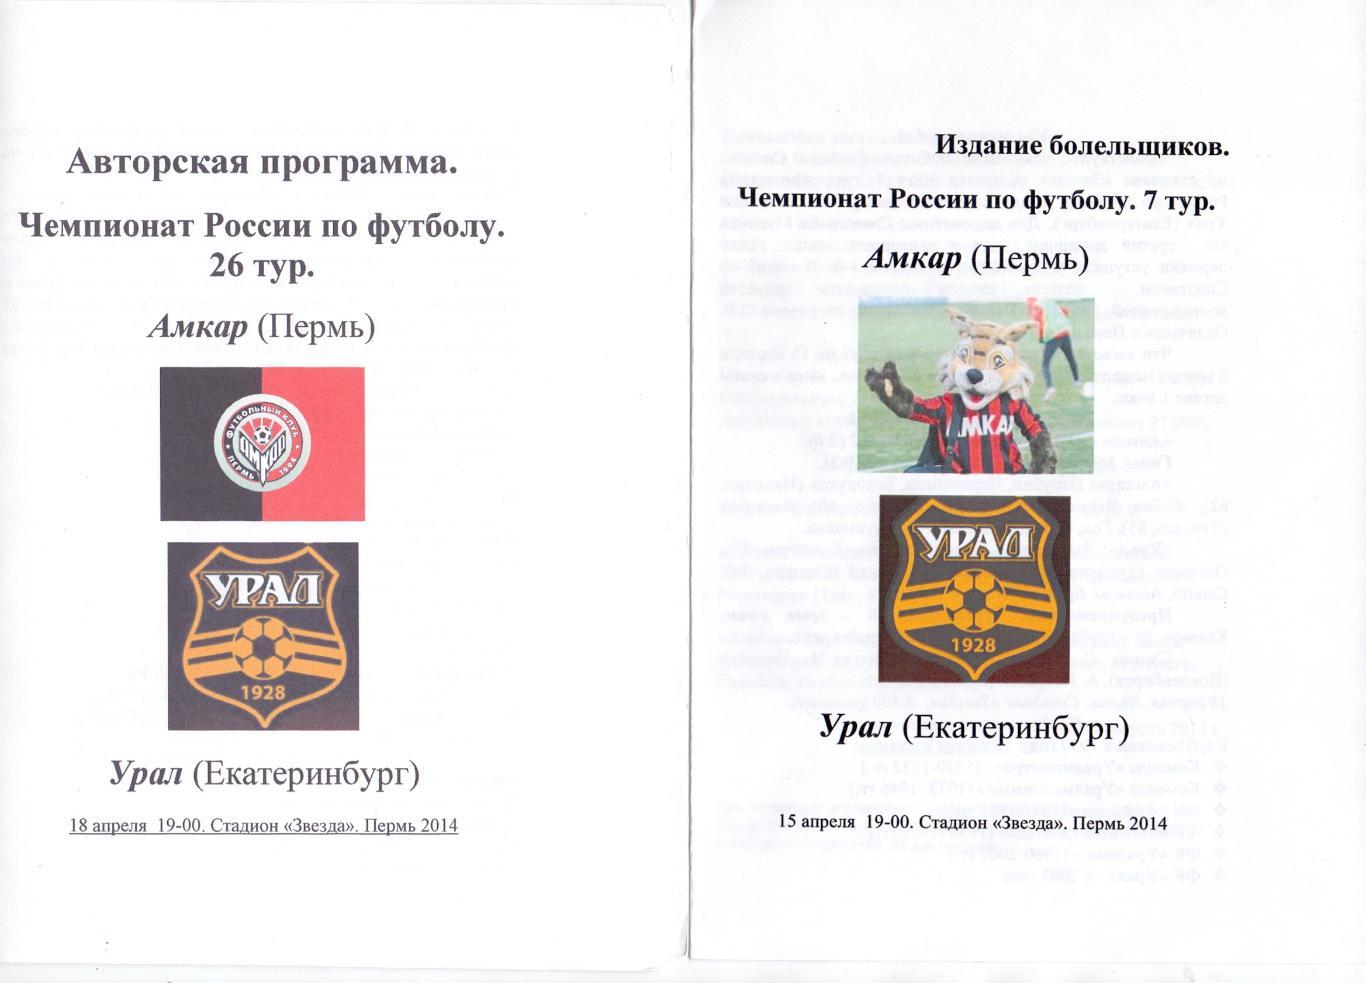 ФК Амкар Пермь - ФК Урал Екатеринбург 2013-14 авторская, слева